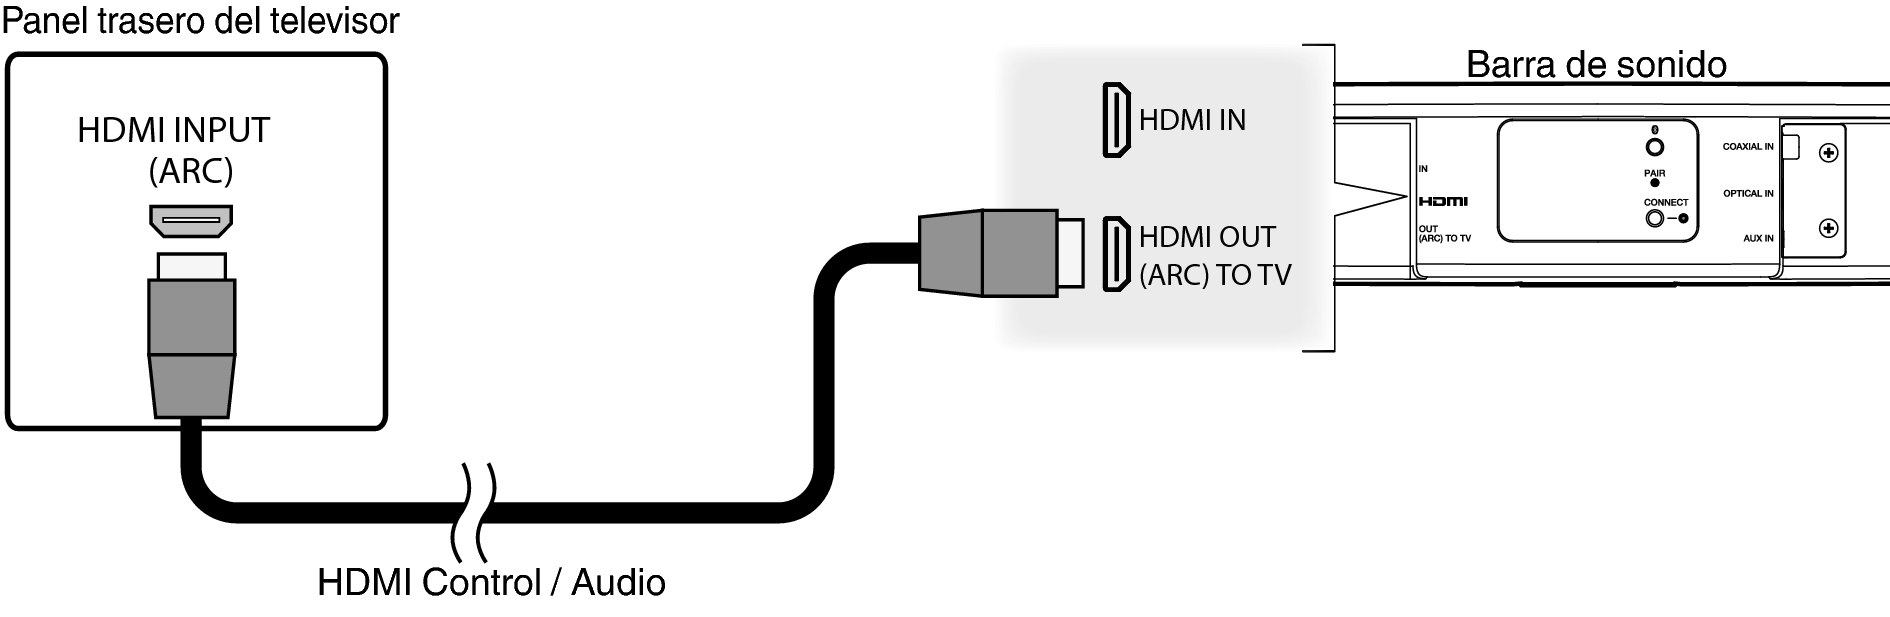 Conne HCHS2 HDMI ARC